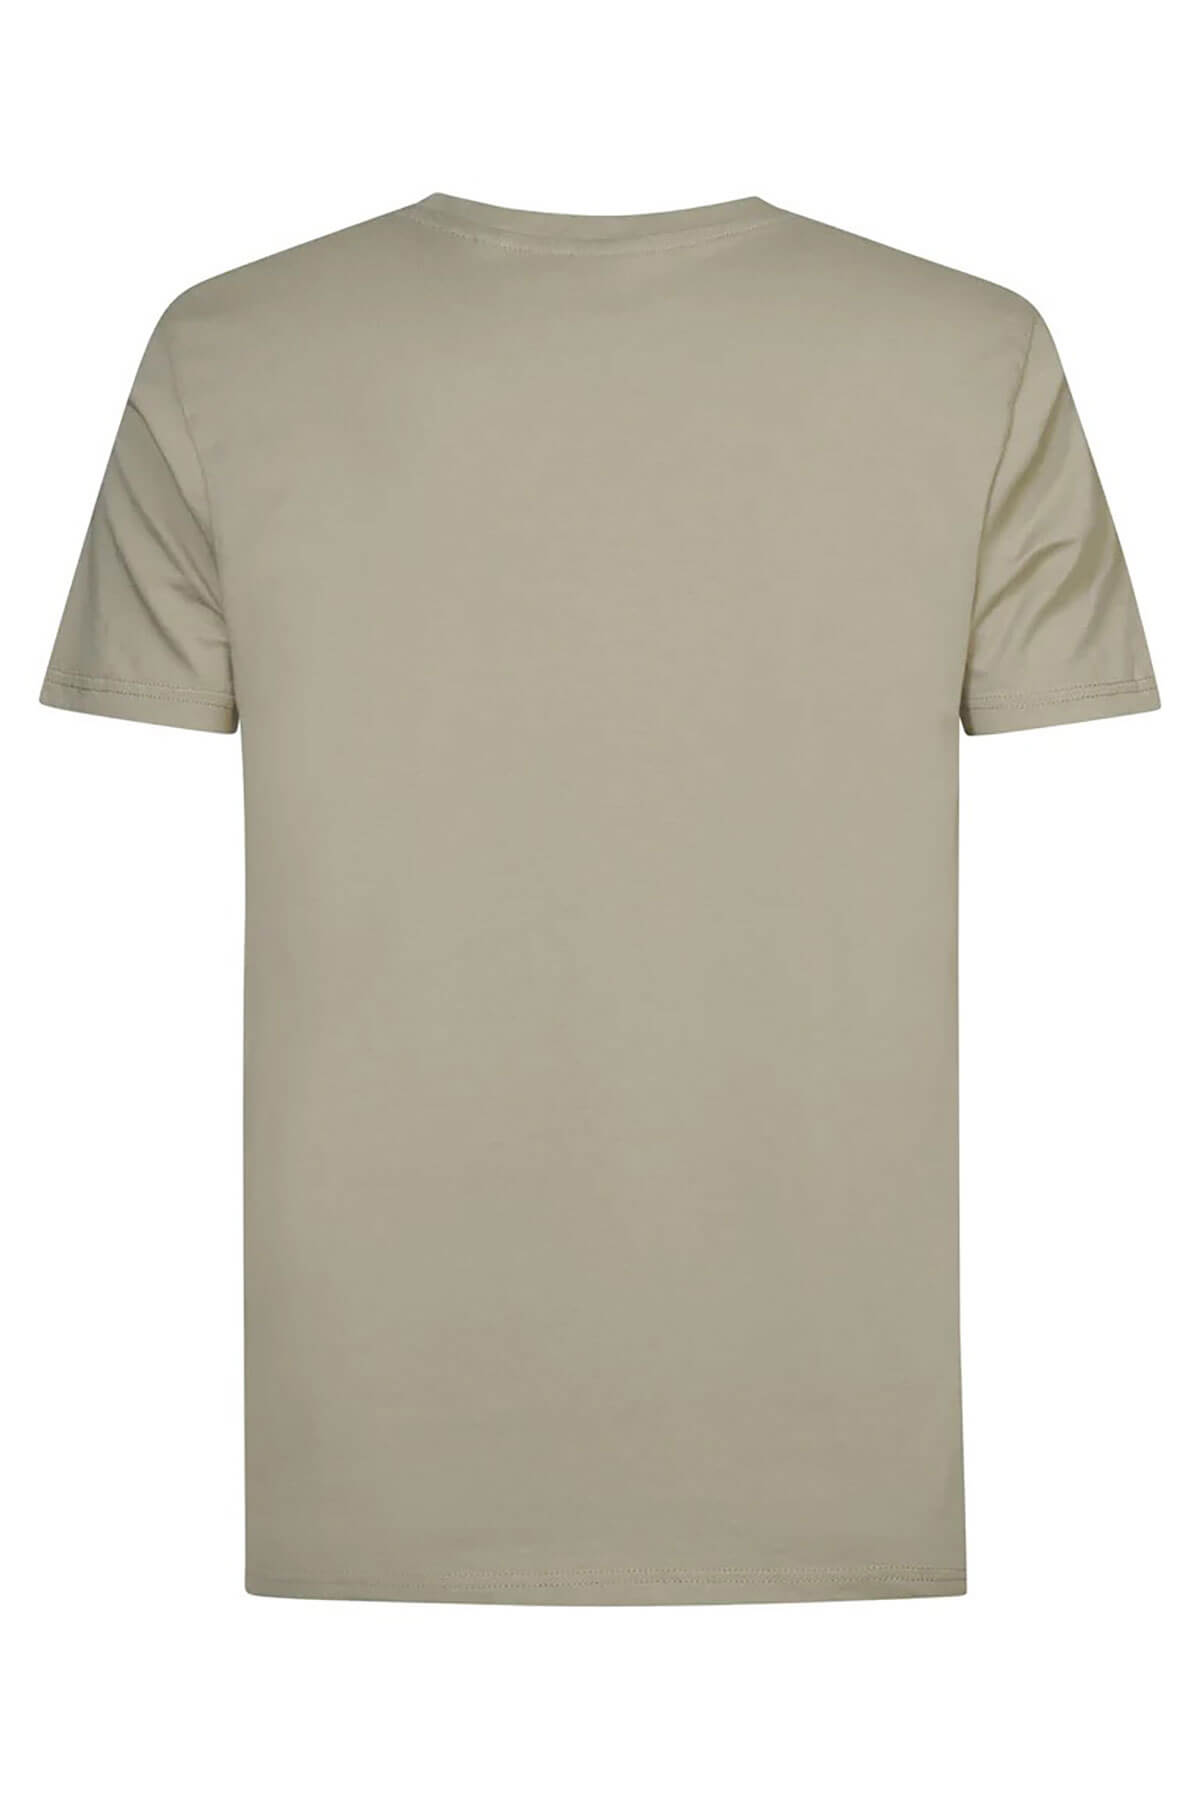 Petrol Industries Logo T-Shirt Seashine